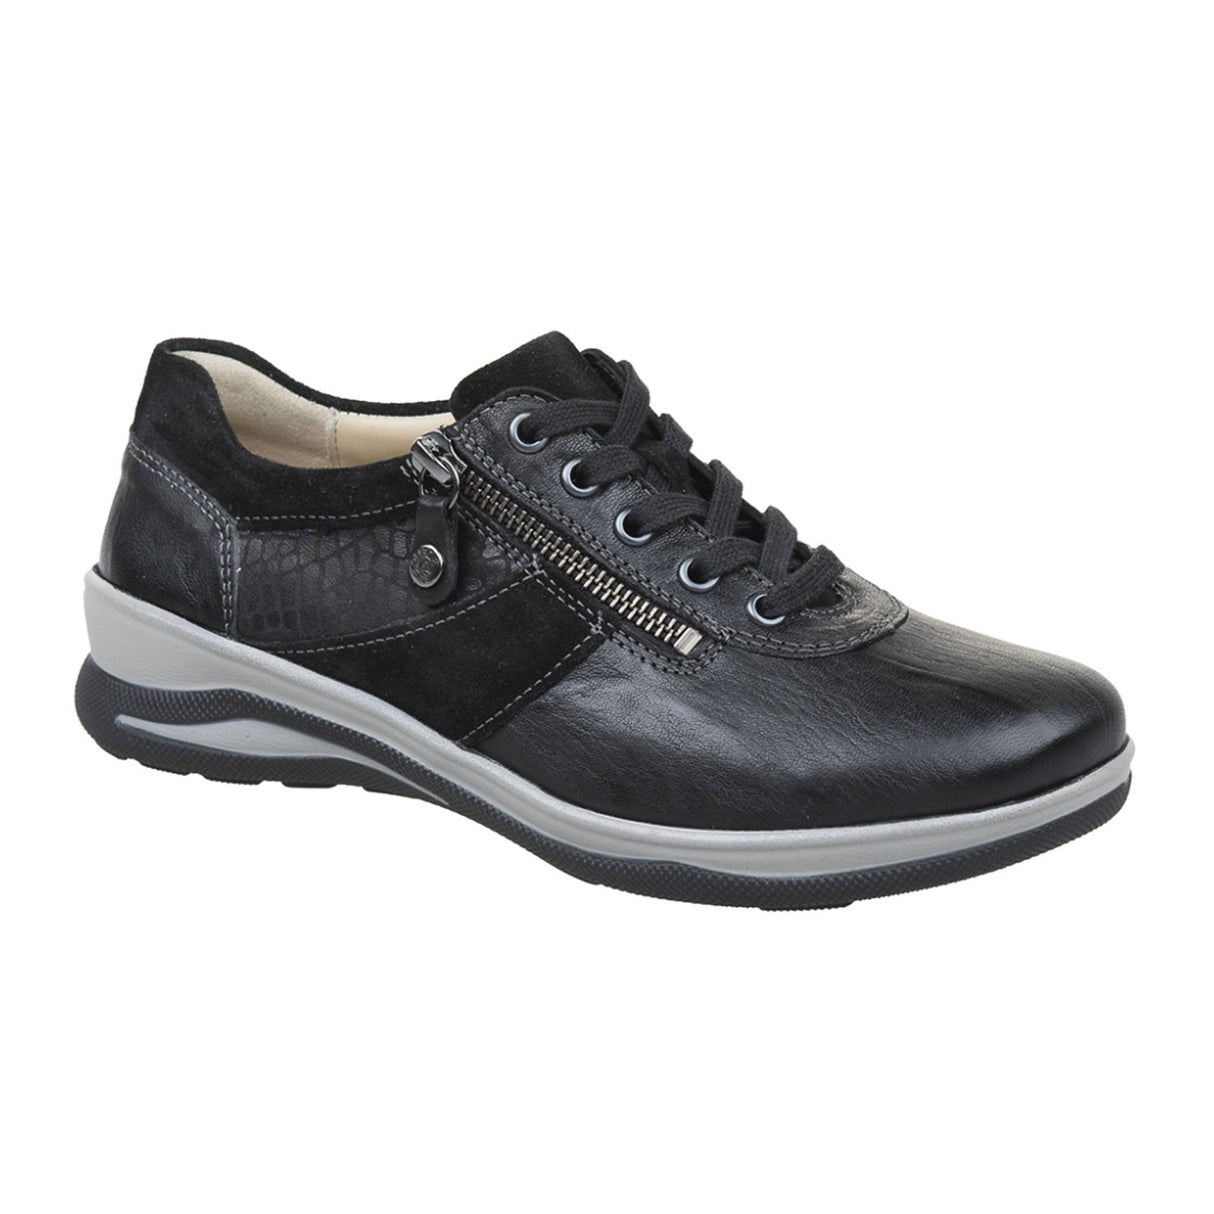 Fidelio Mitzy Wide Sneaker (Women) - Black Dress-Casual - Sneakers - The Heel Shoe Fitters